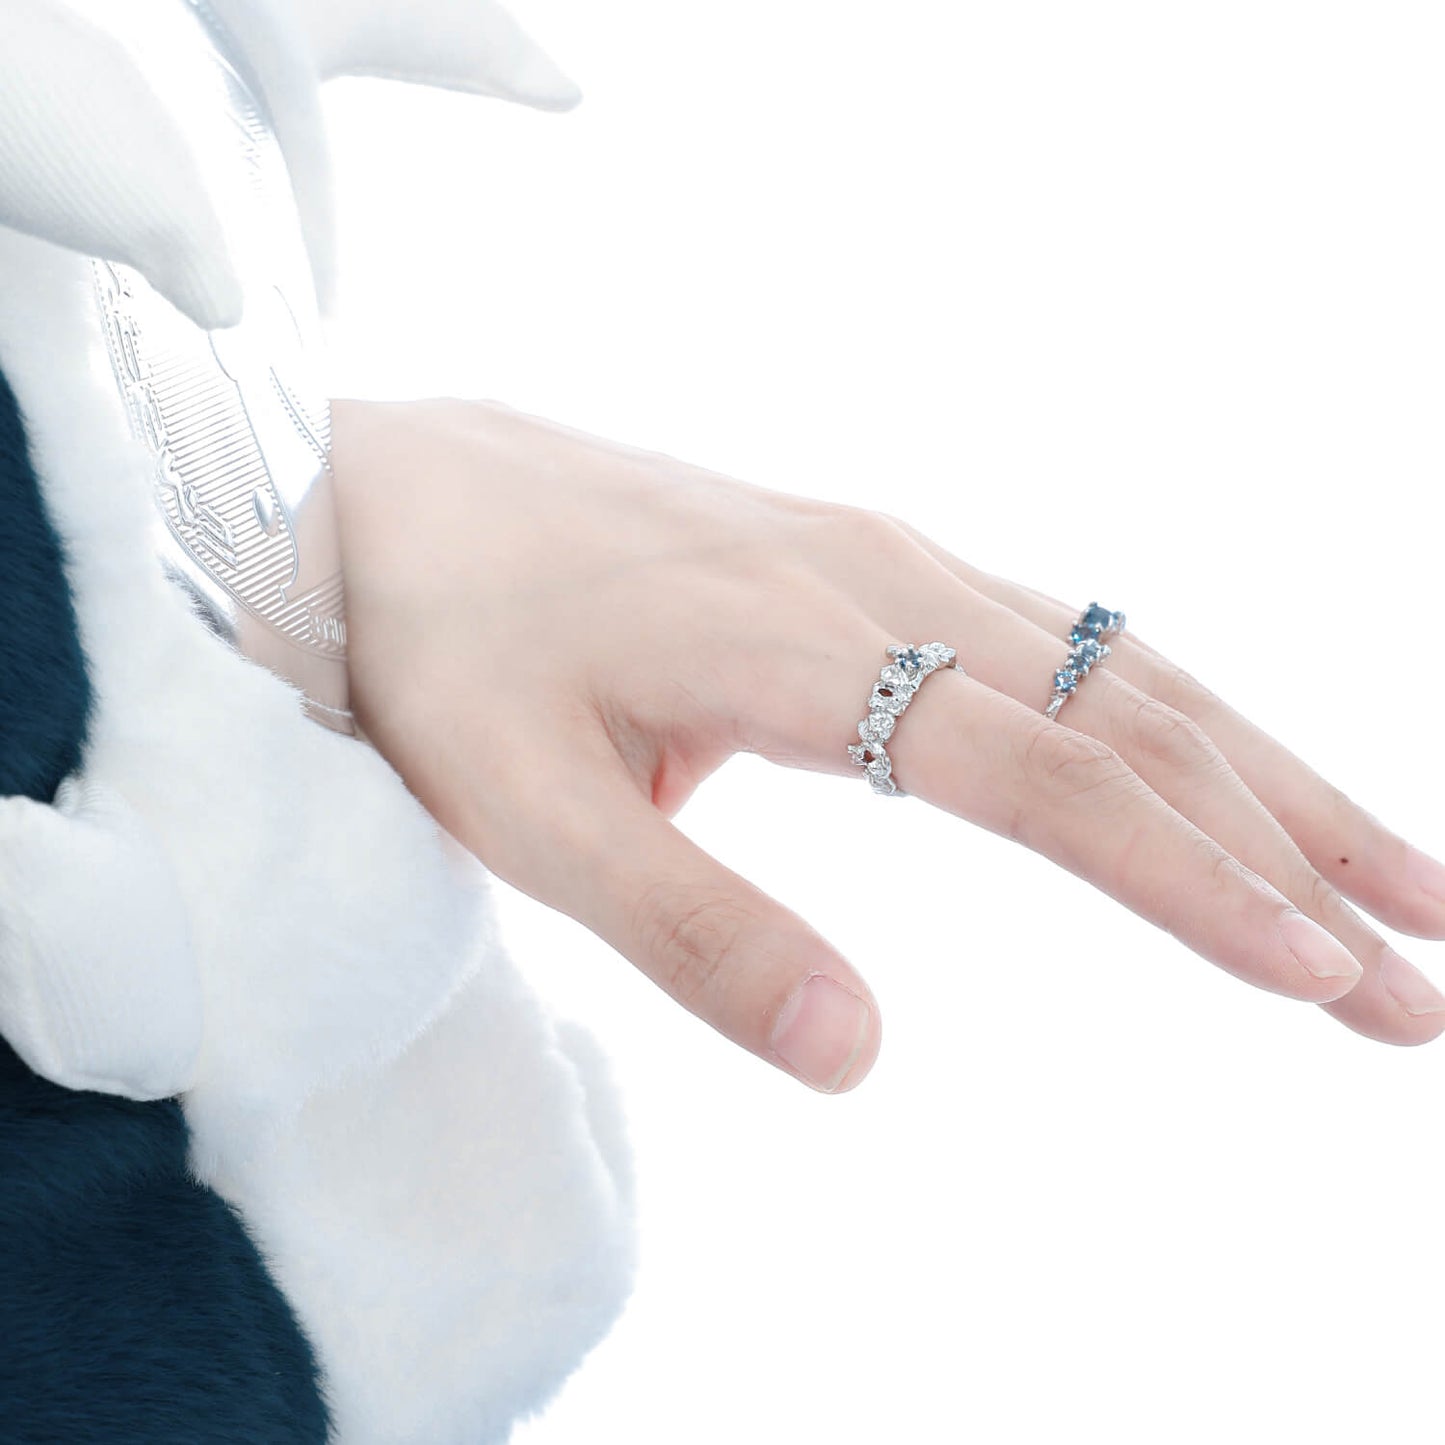 Gemstone Rings Silver Rings Neutral Jewelry | Buy at Khanie